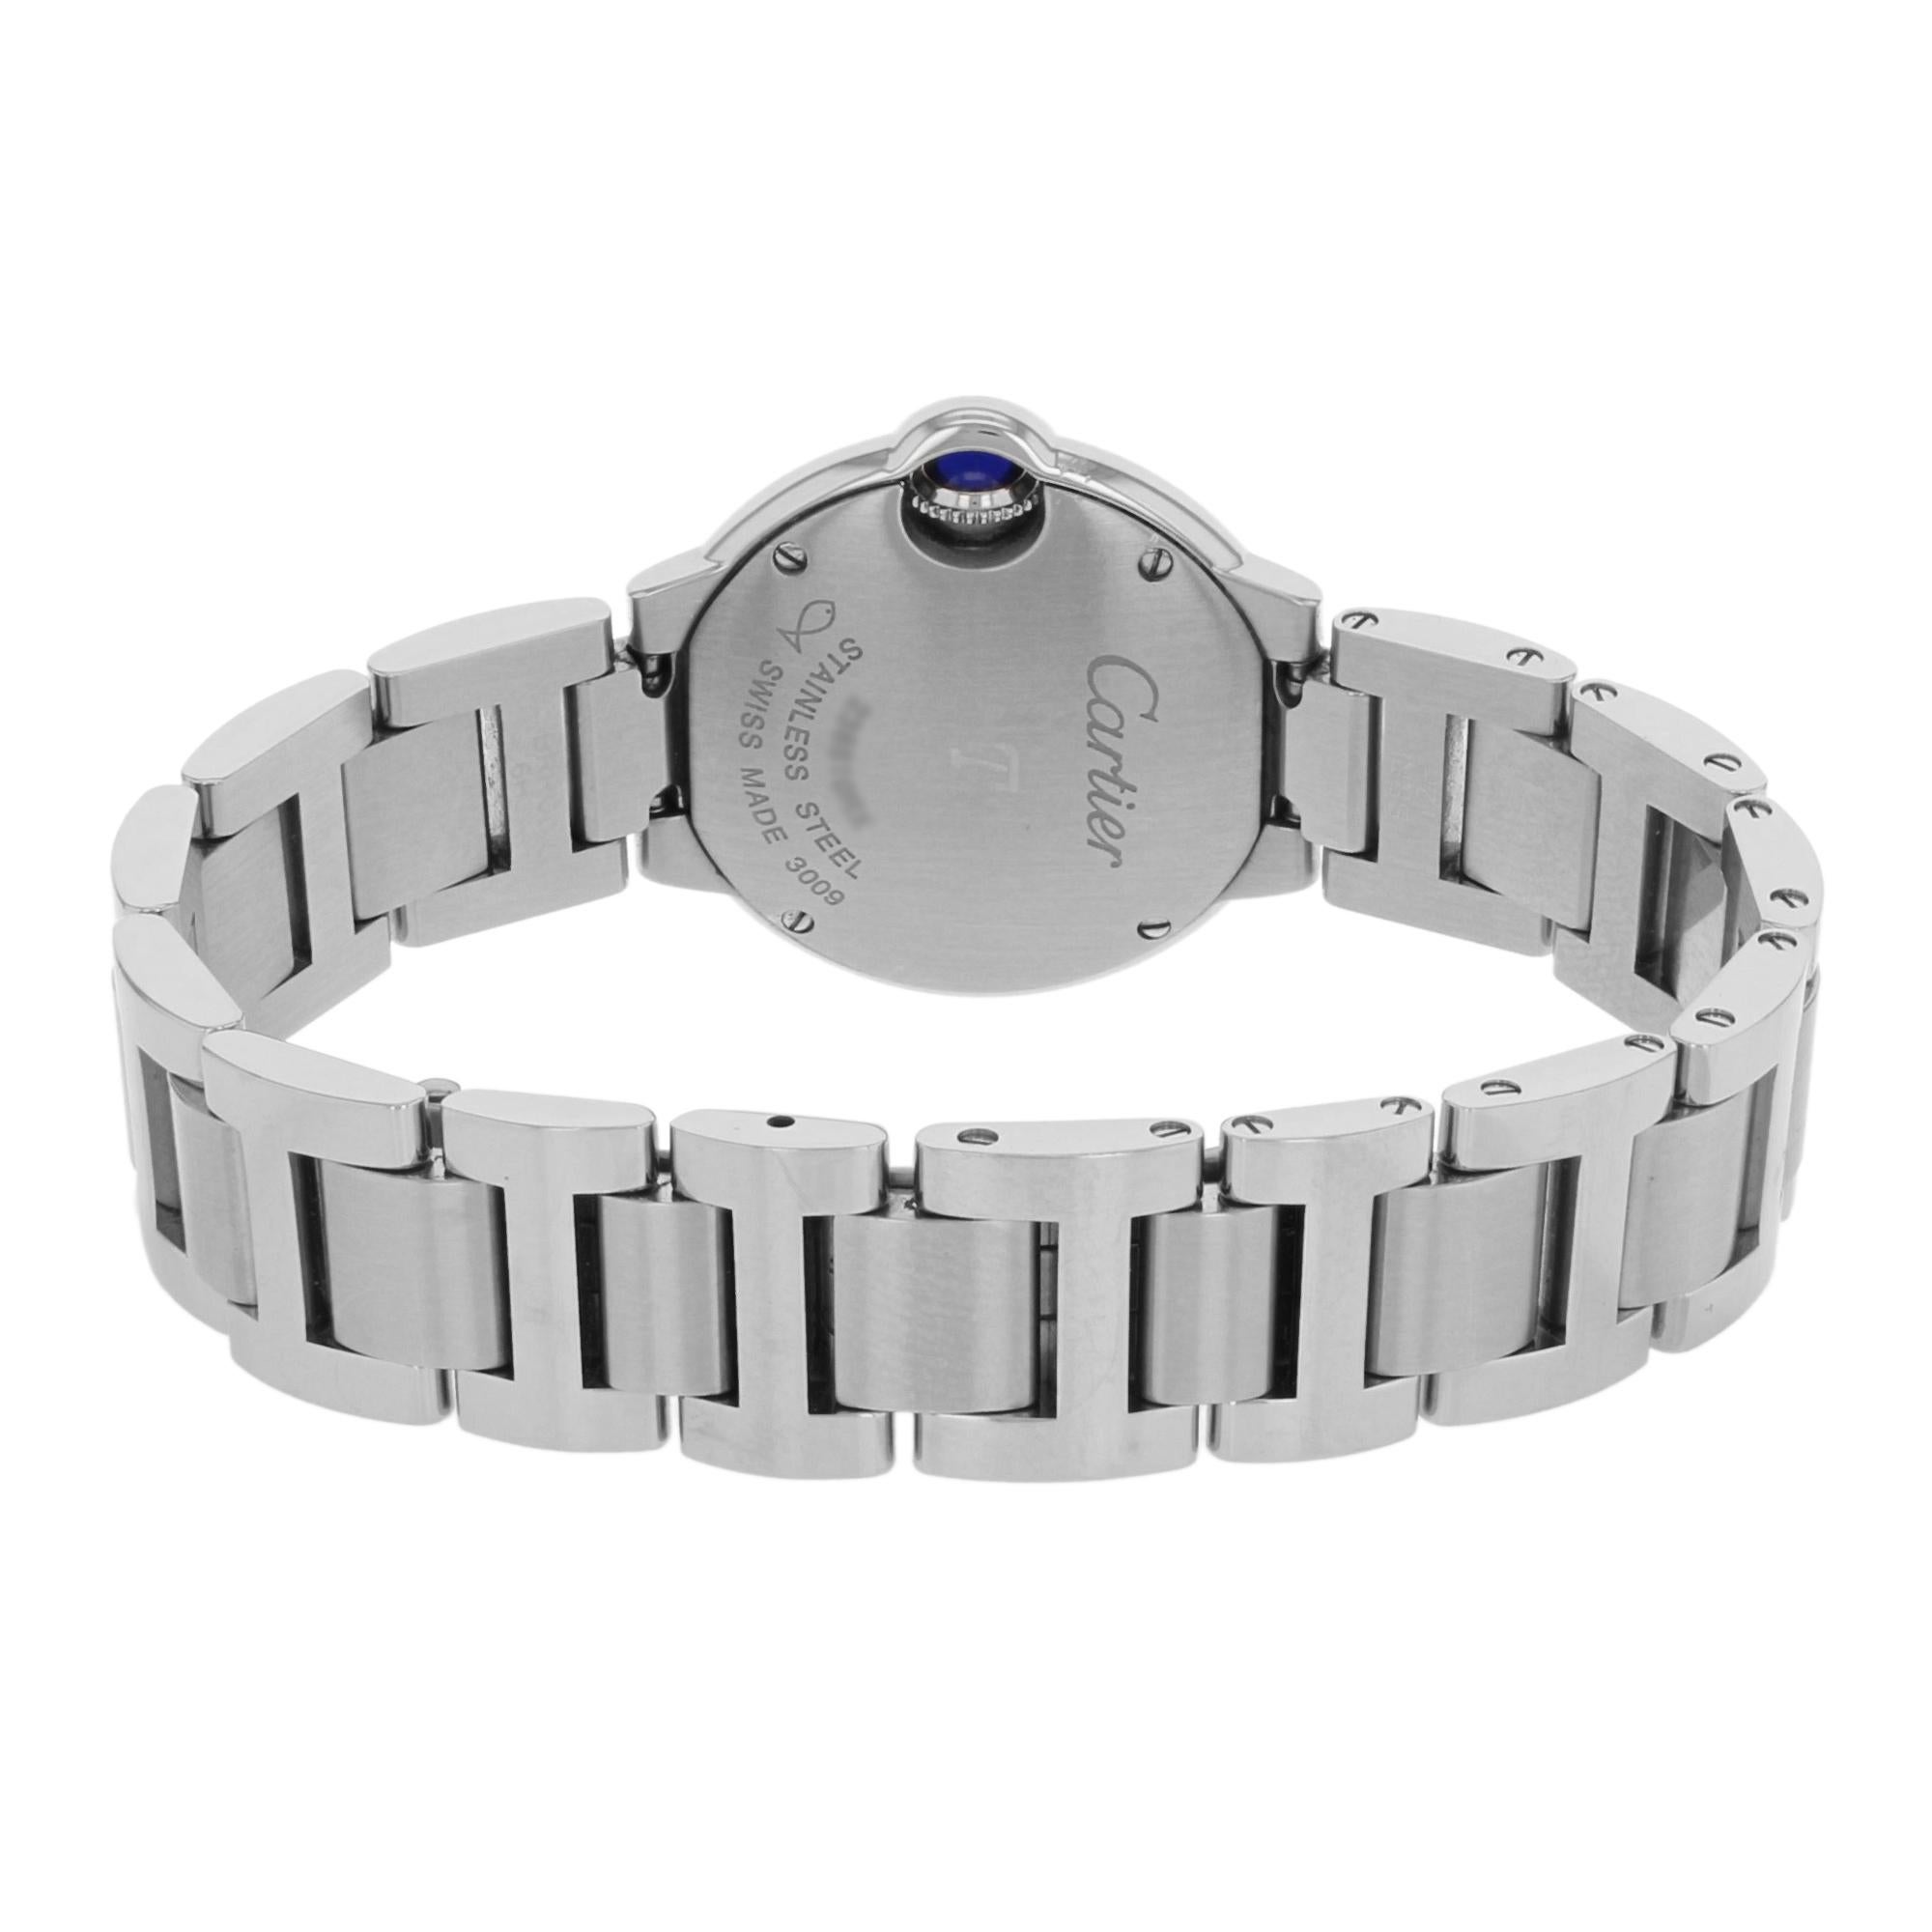 cartier ballon bleu steel women's watch w69010z4 - silver